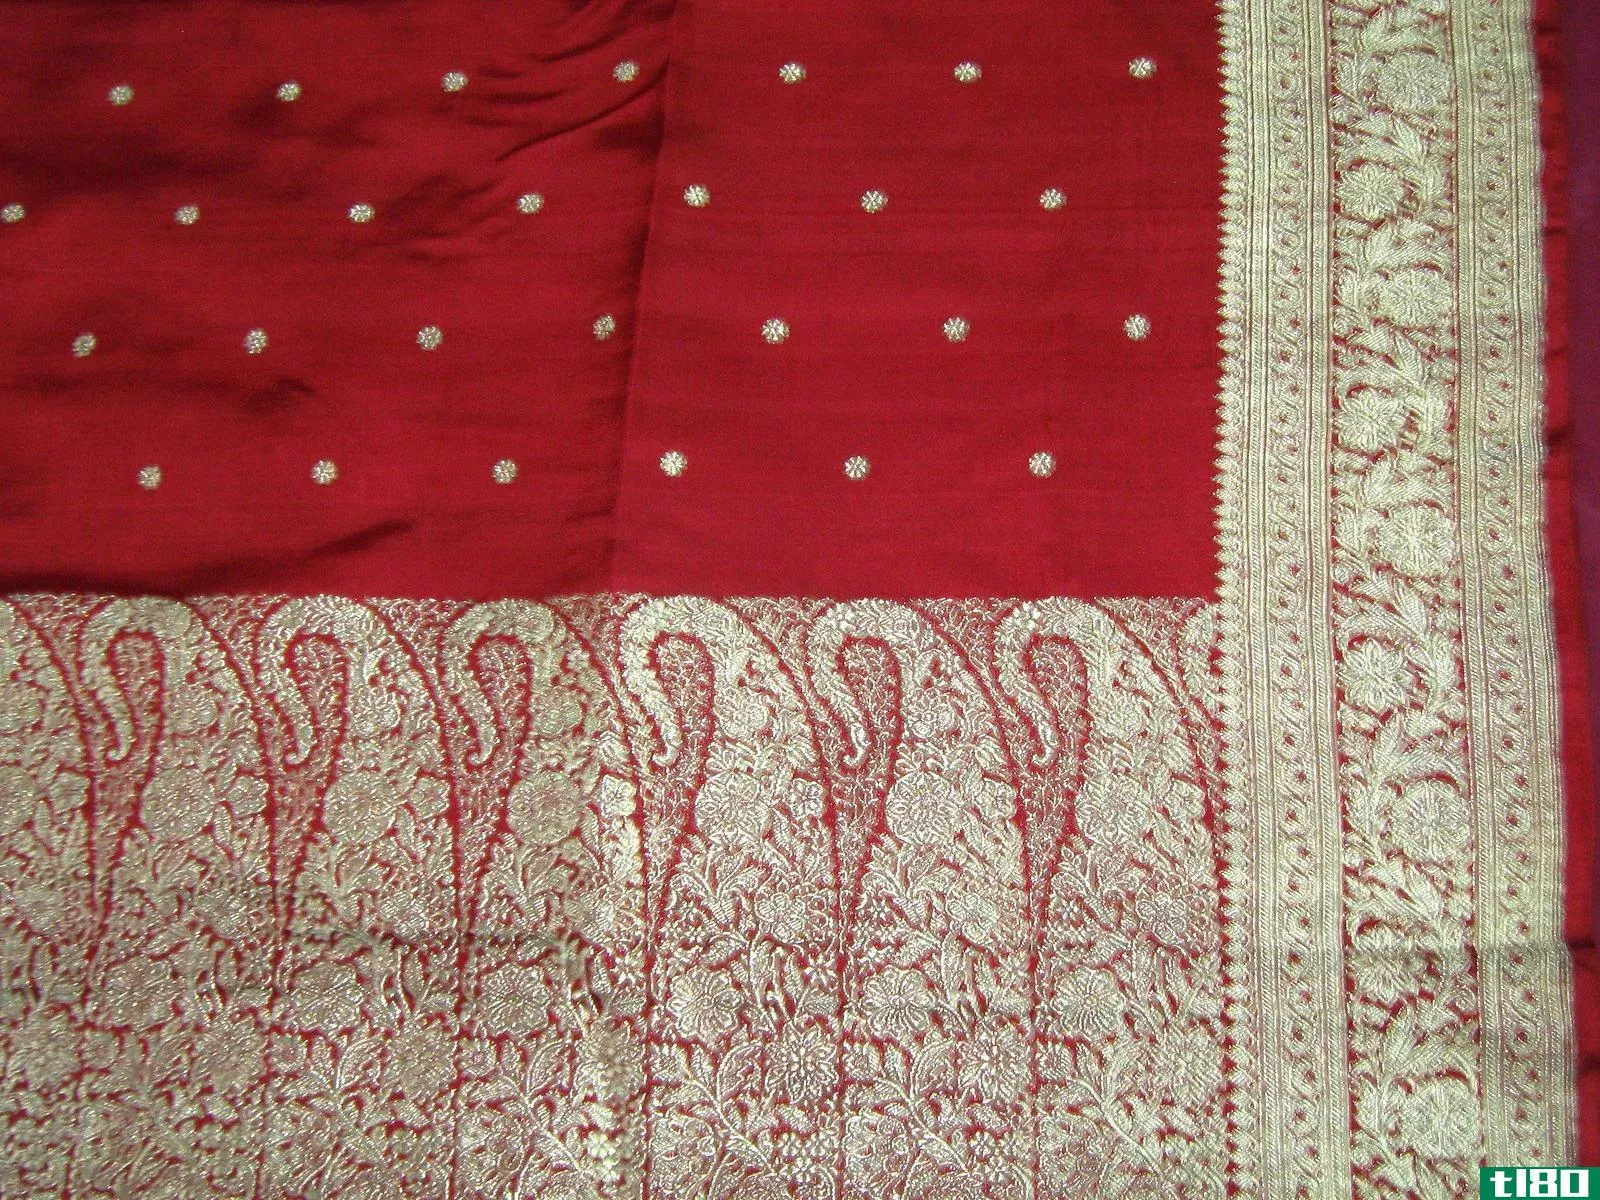 kanchipuram纱丽(kanchipuram saree)和巴纳拉西(banarasi)的区别